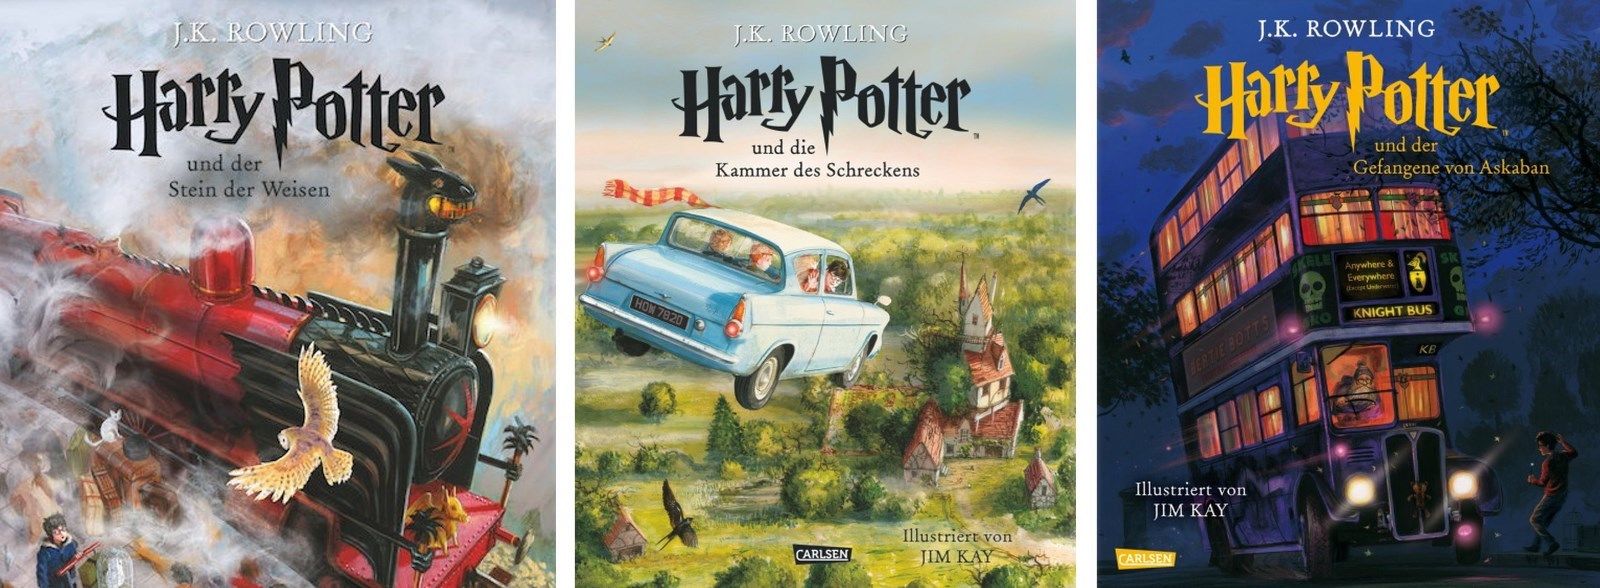 Harry Potter 1, 2, 3 illustrierte Schmuckausgabe von J. K. Rowling